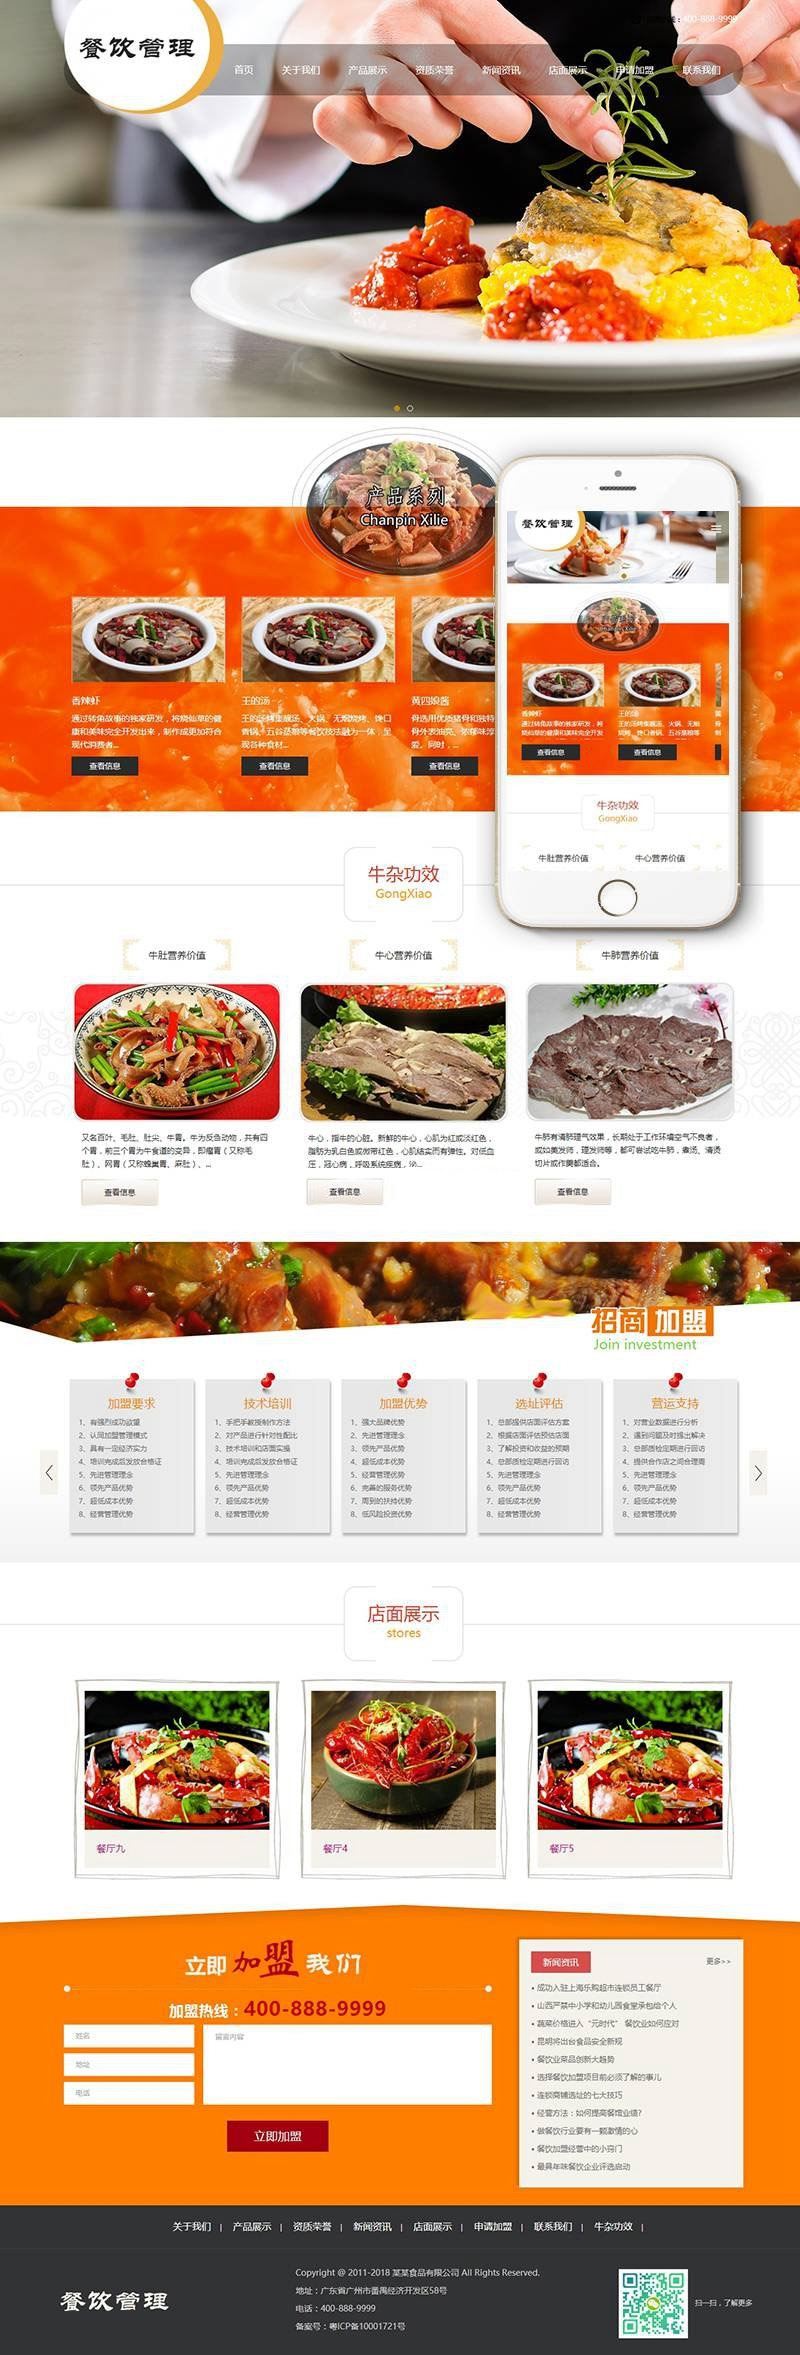 响应式 餐饮管理小吃类网站源码 dedecms织梦模板 带手机端